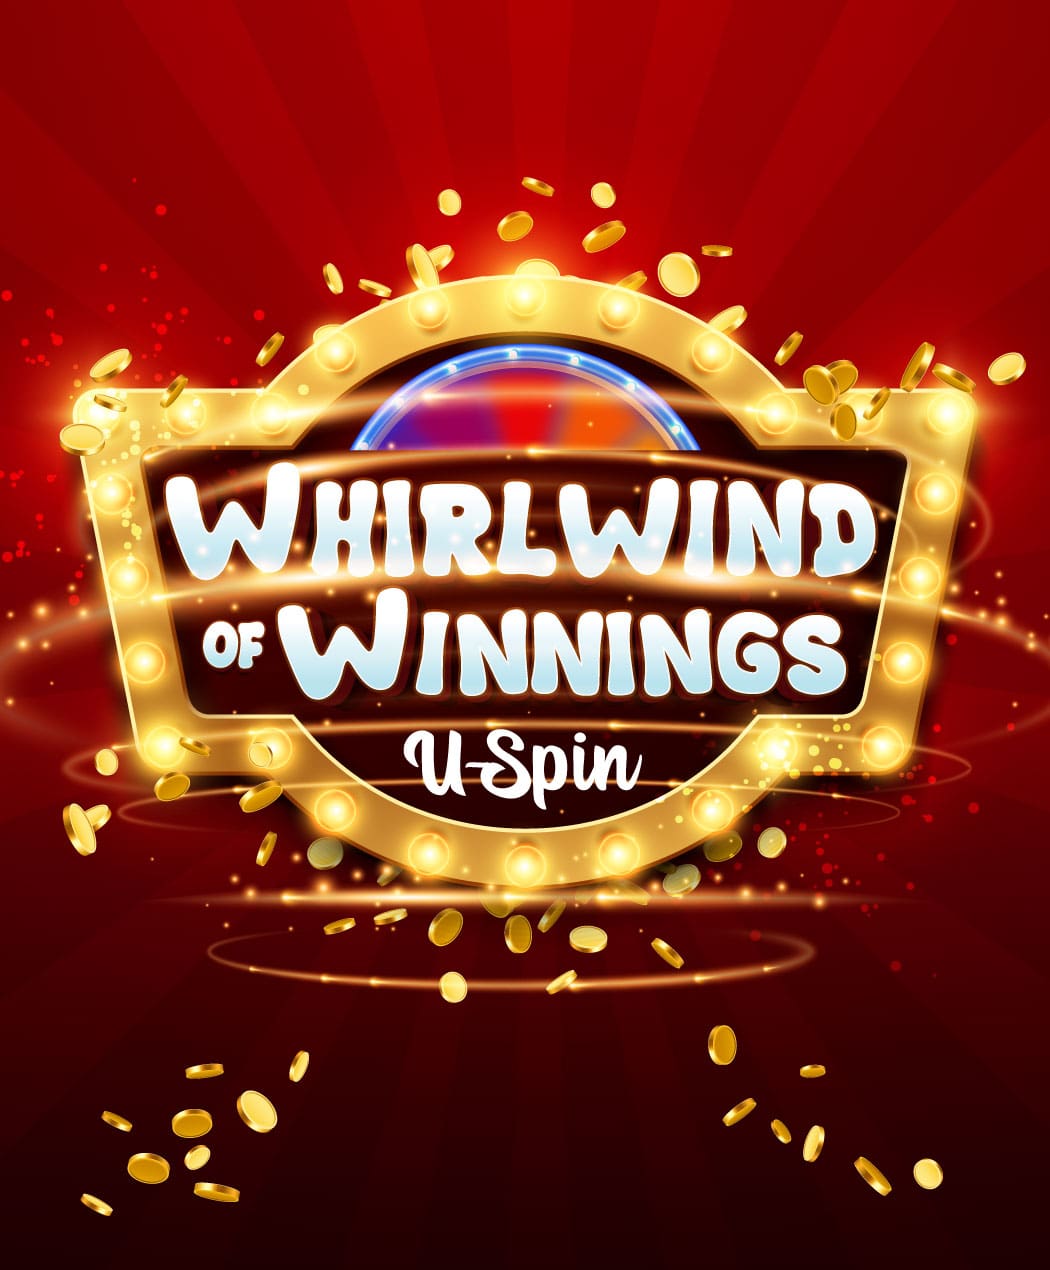 Whirlwind of Winnings U- Spin